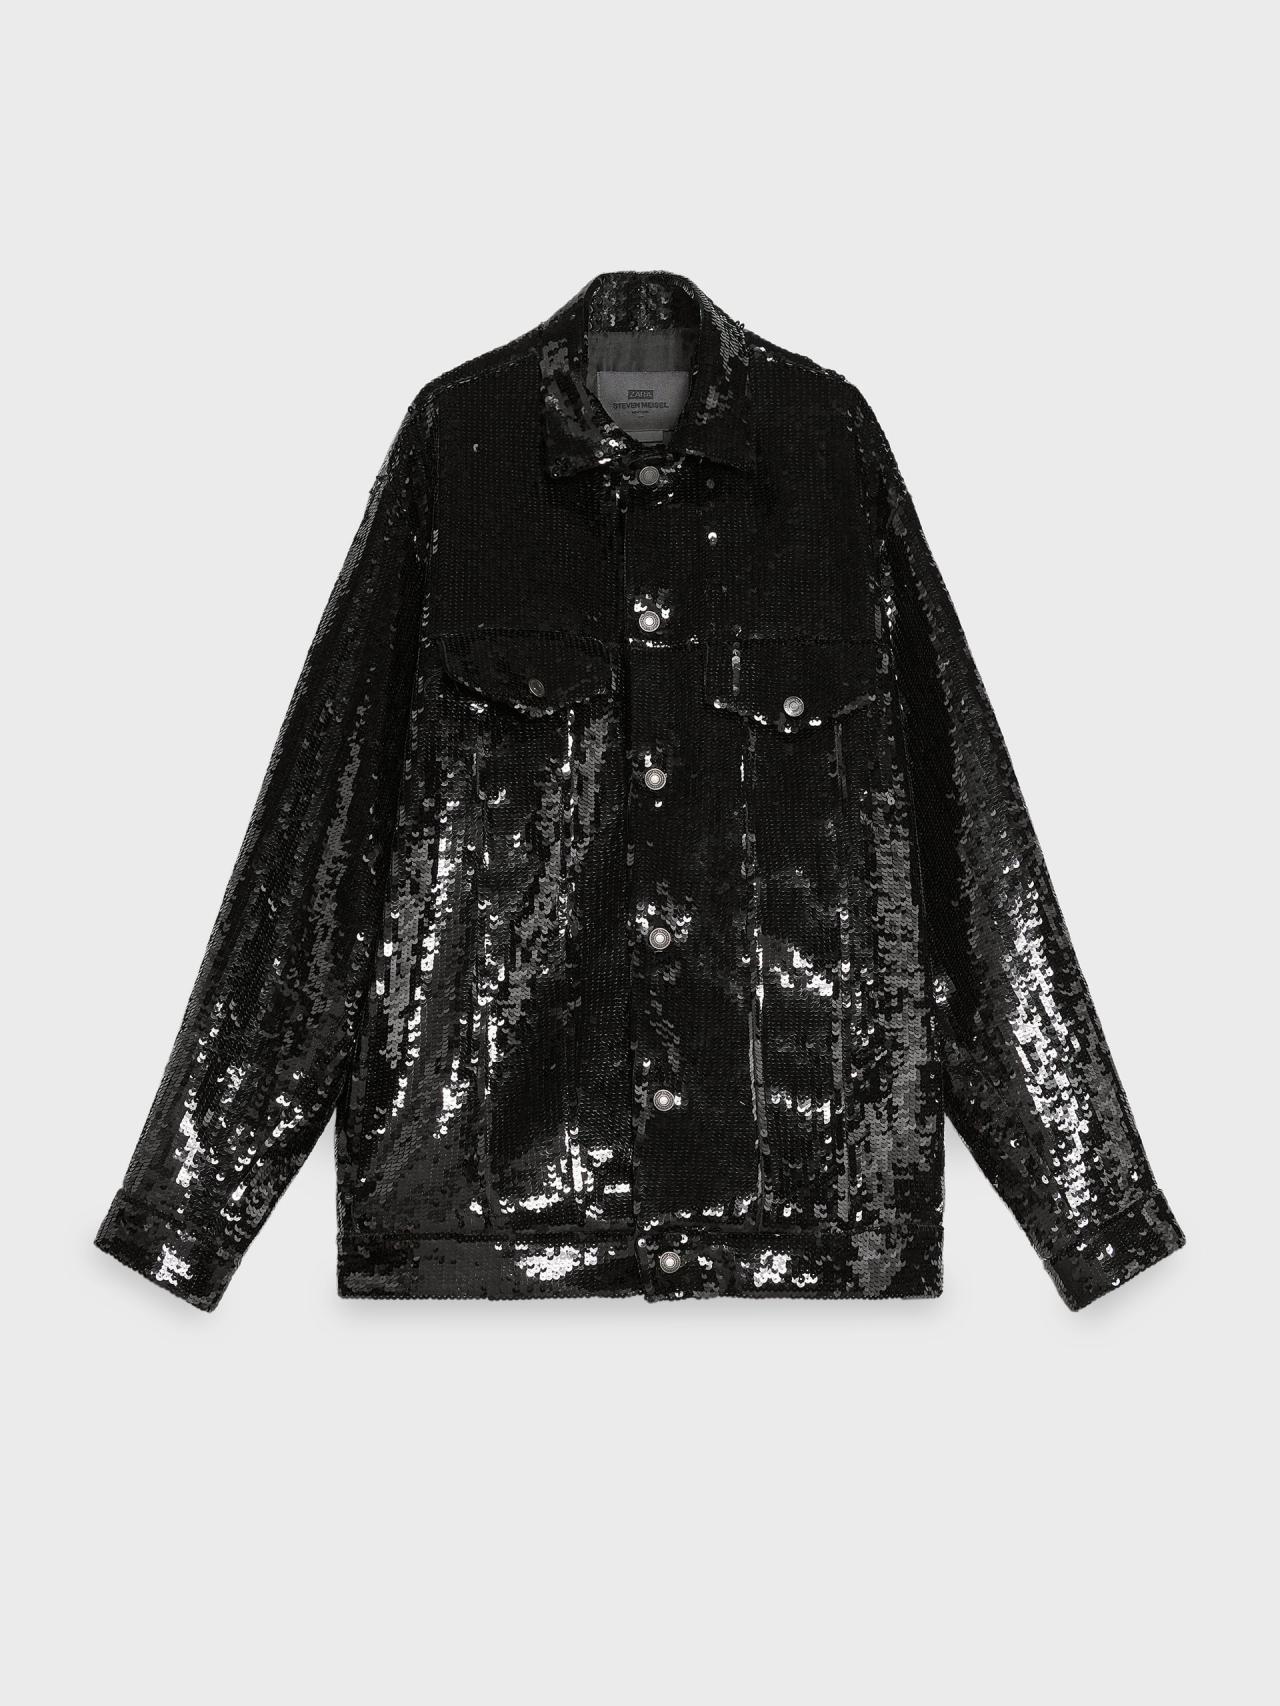 Detalle de la chaqueta de la colección de Steven Meisel y Zara.